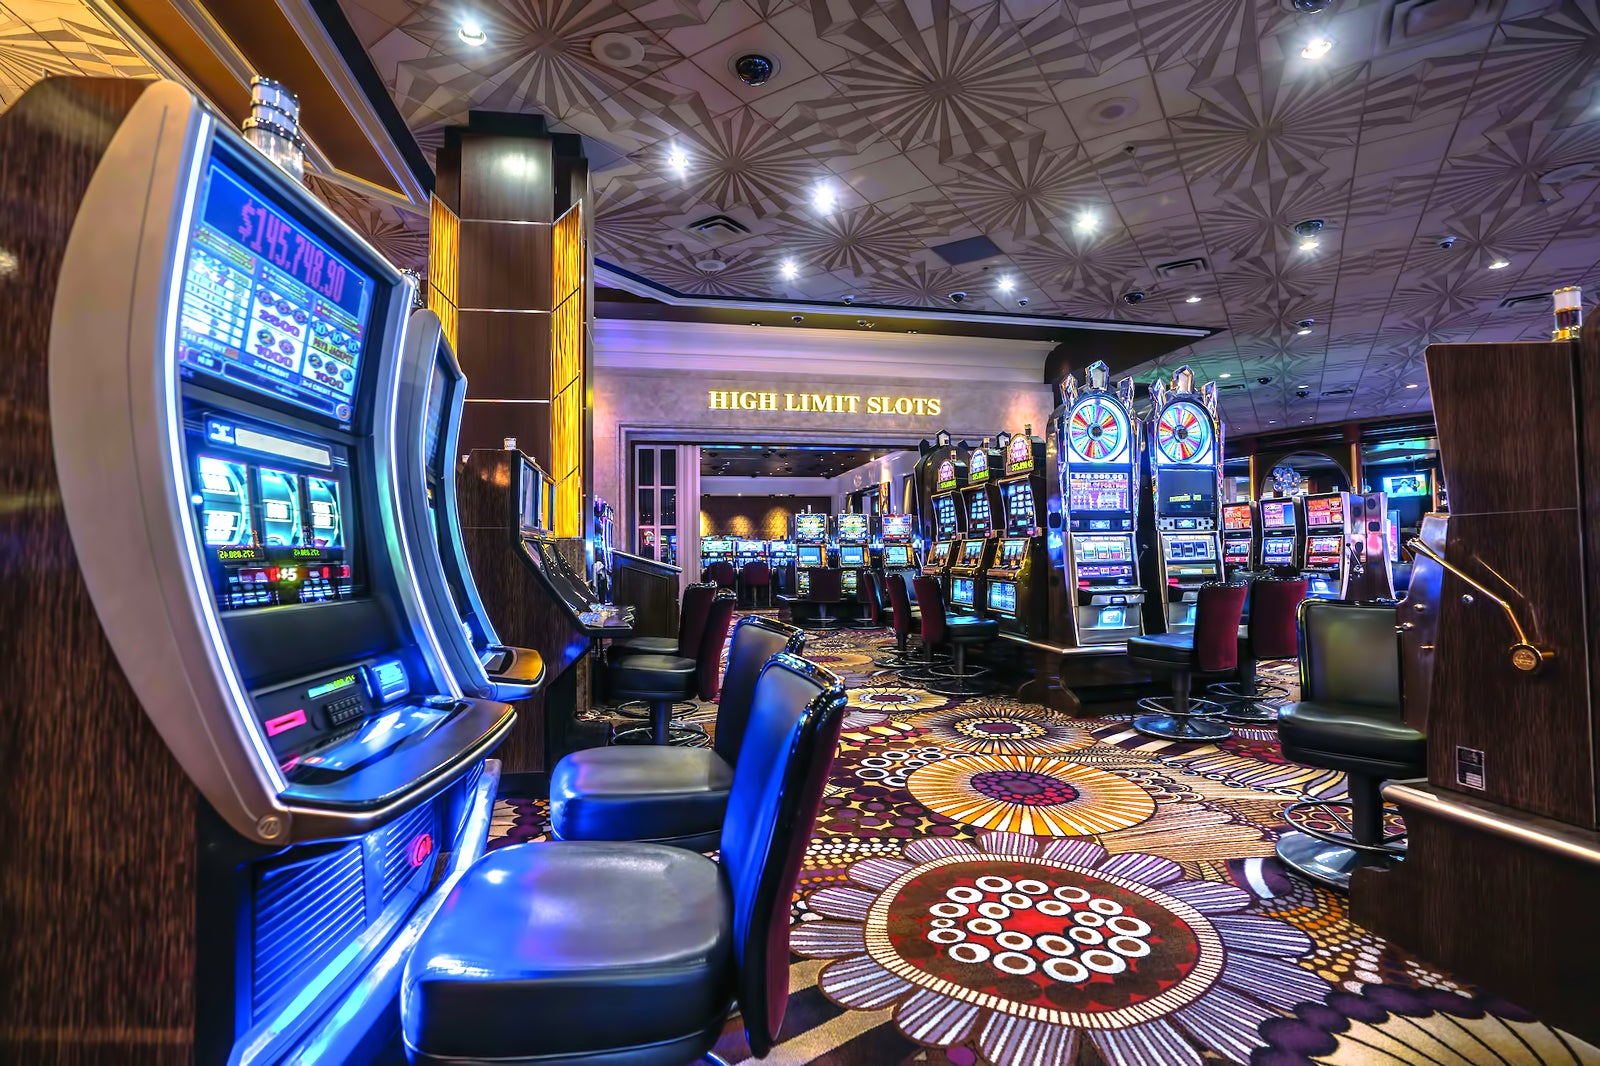 An internal view of a casino in Vegas